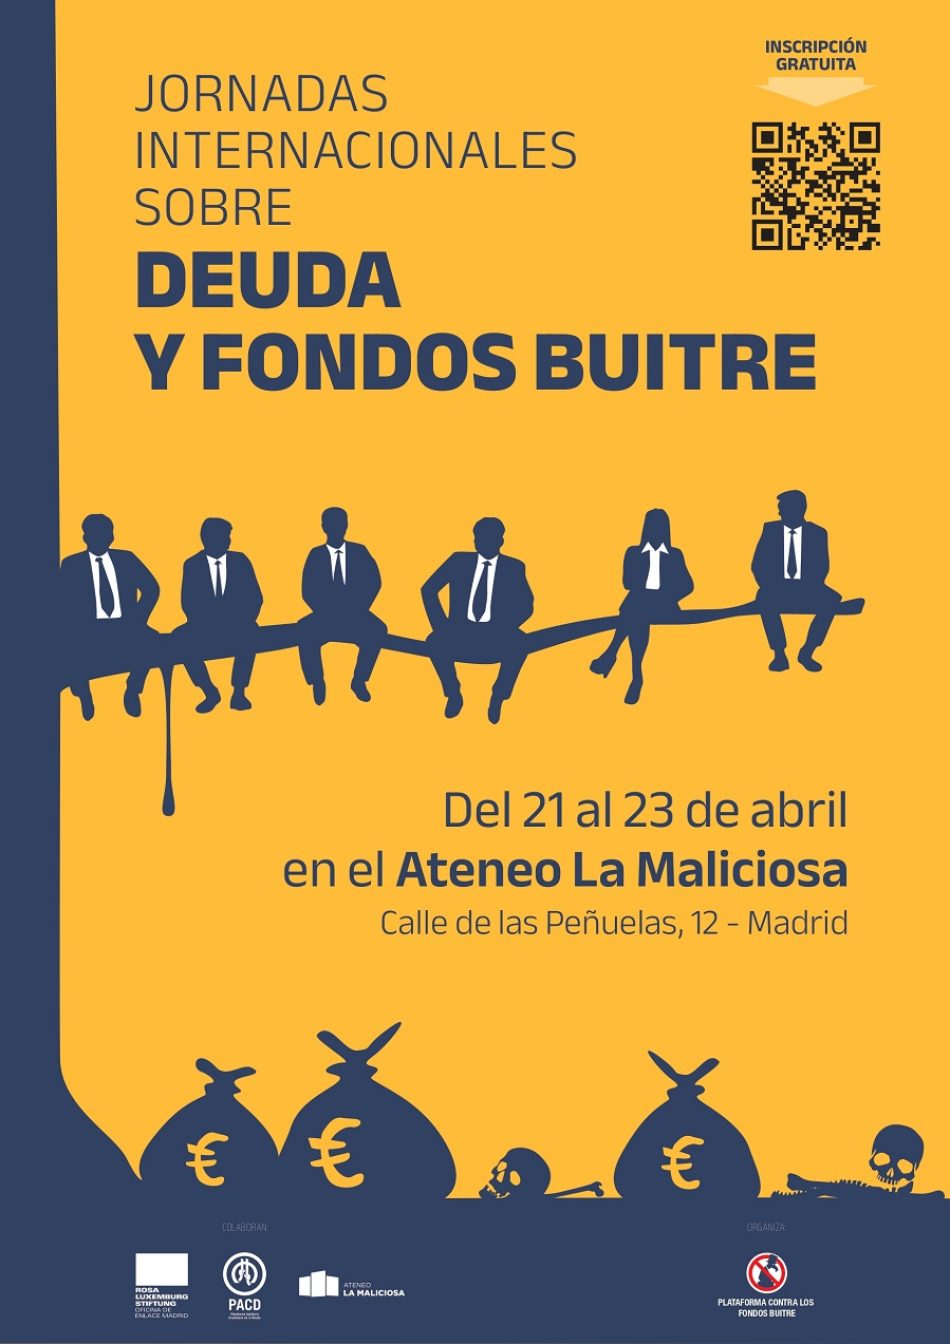 Jornadas internacionales sobre deuda y fondos buitre: Del 21 al 23 de abril en el Ateneo La Maliciosa de Madrid